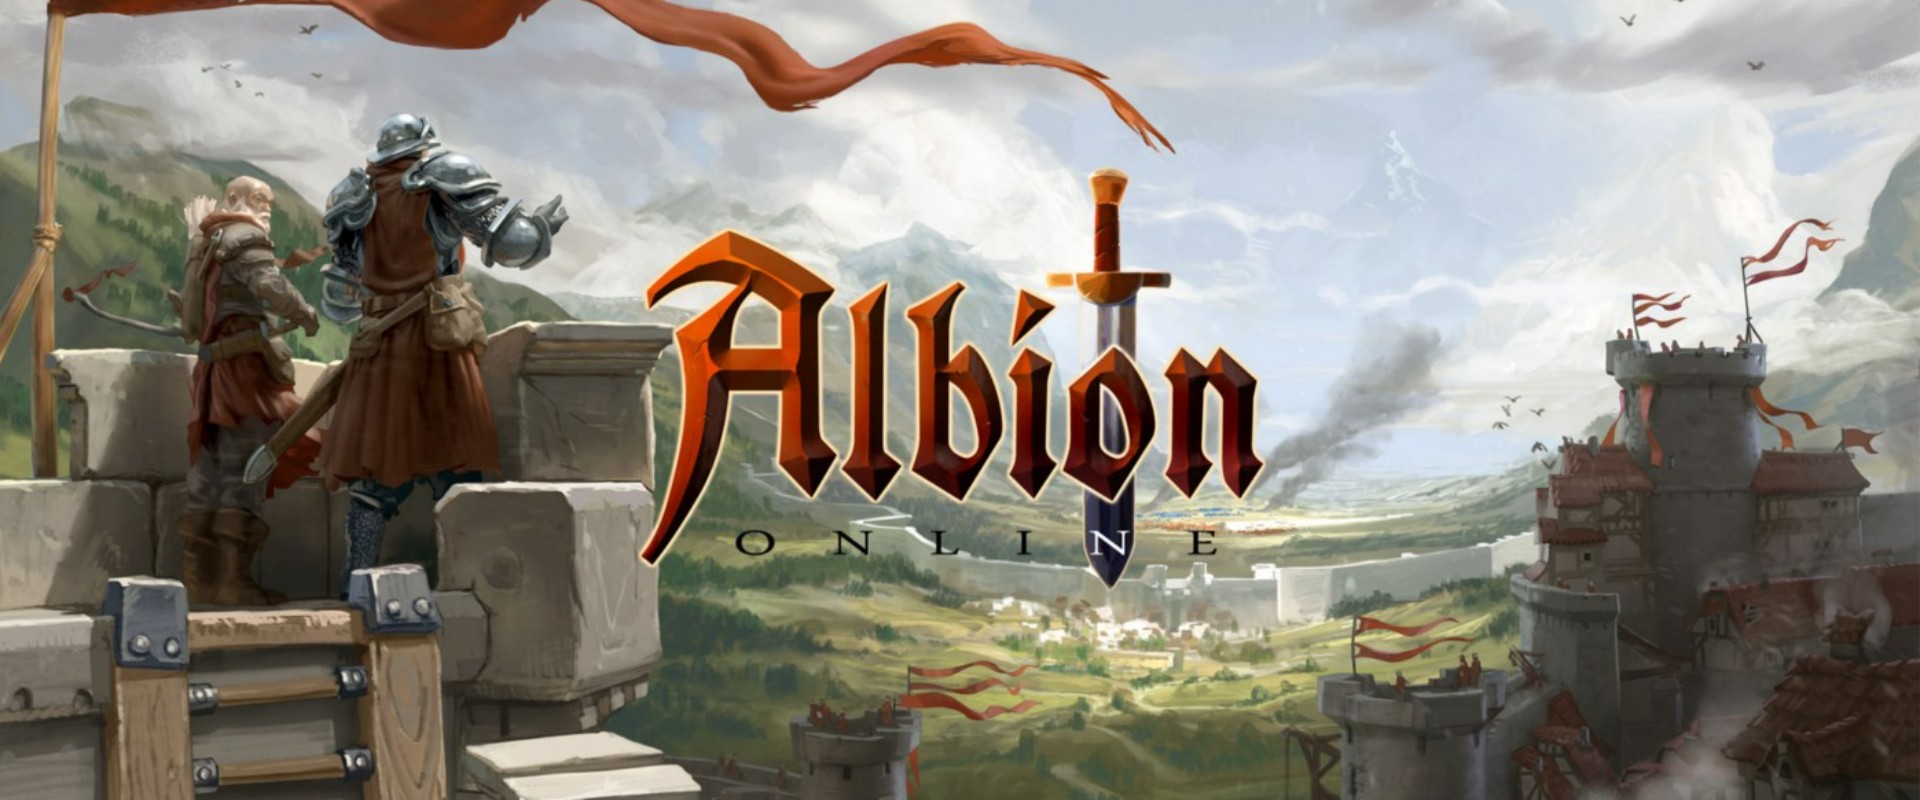 ดาวน์โหลดและเล่น Albion Online บน PC ด้วย NoxPlayer โปรแกรมจำลองฟรี